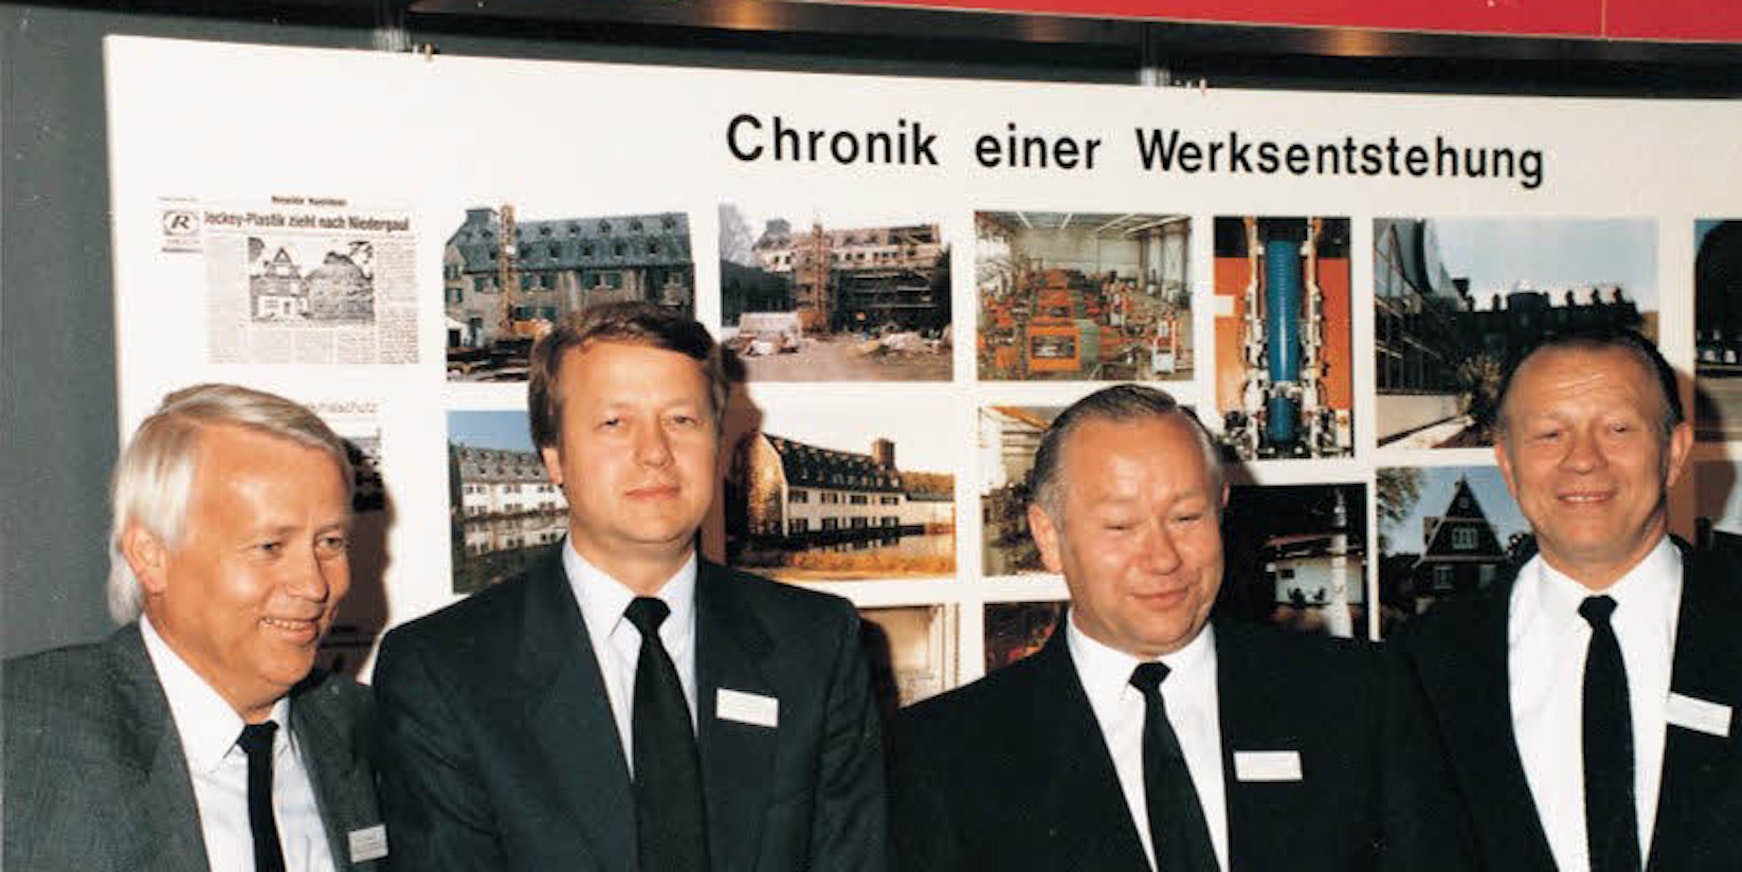 Die vier Brüder Werner, Herbert, Karl-Heinz und Egon Kemmerich im Jahr 1986, als alle vier Geschäftsführende Gesellschafter waren.